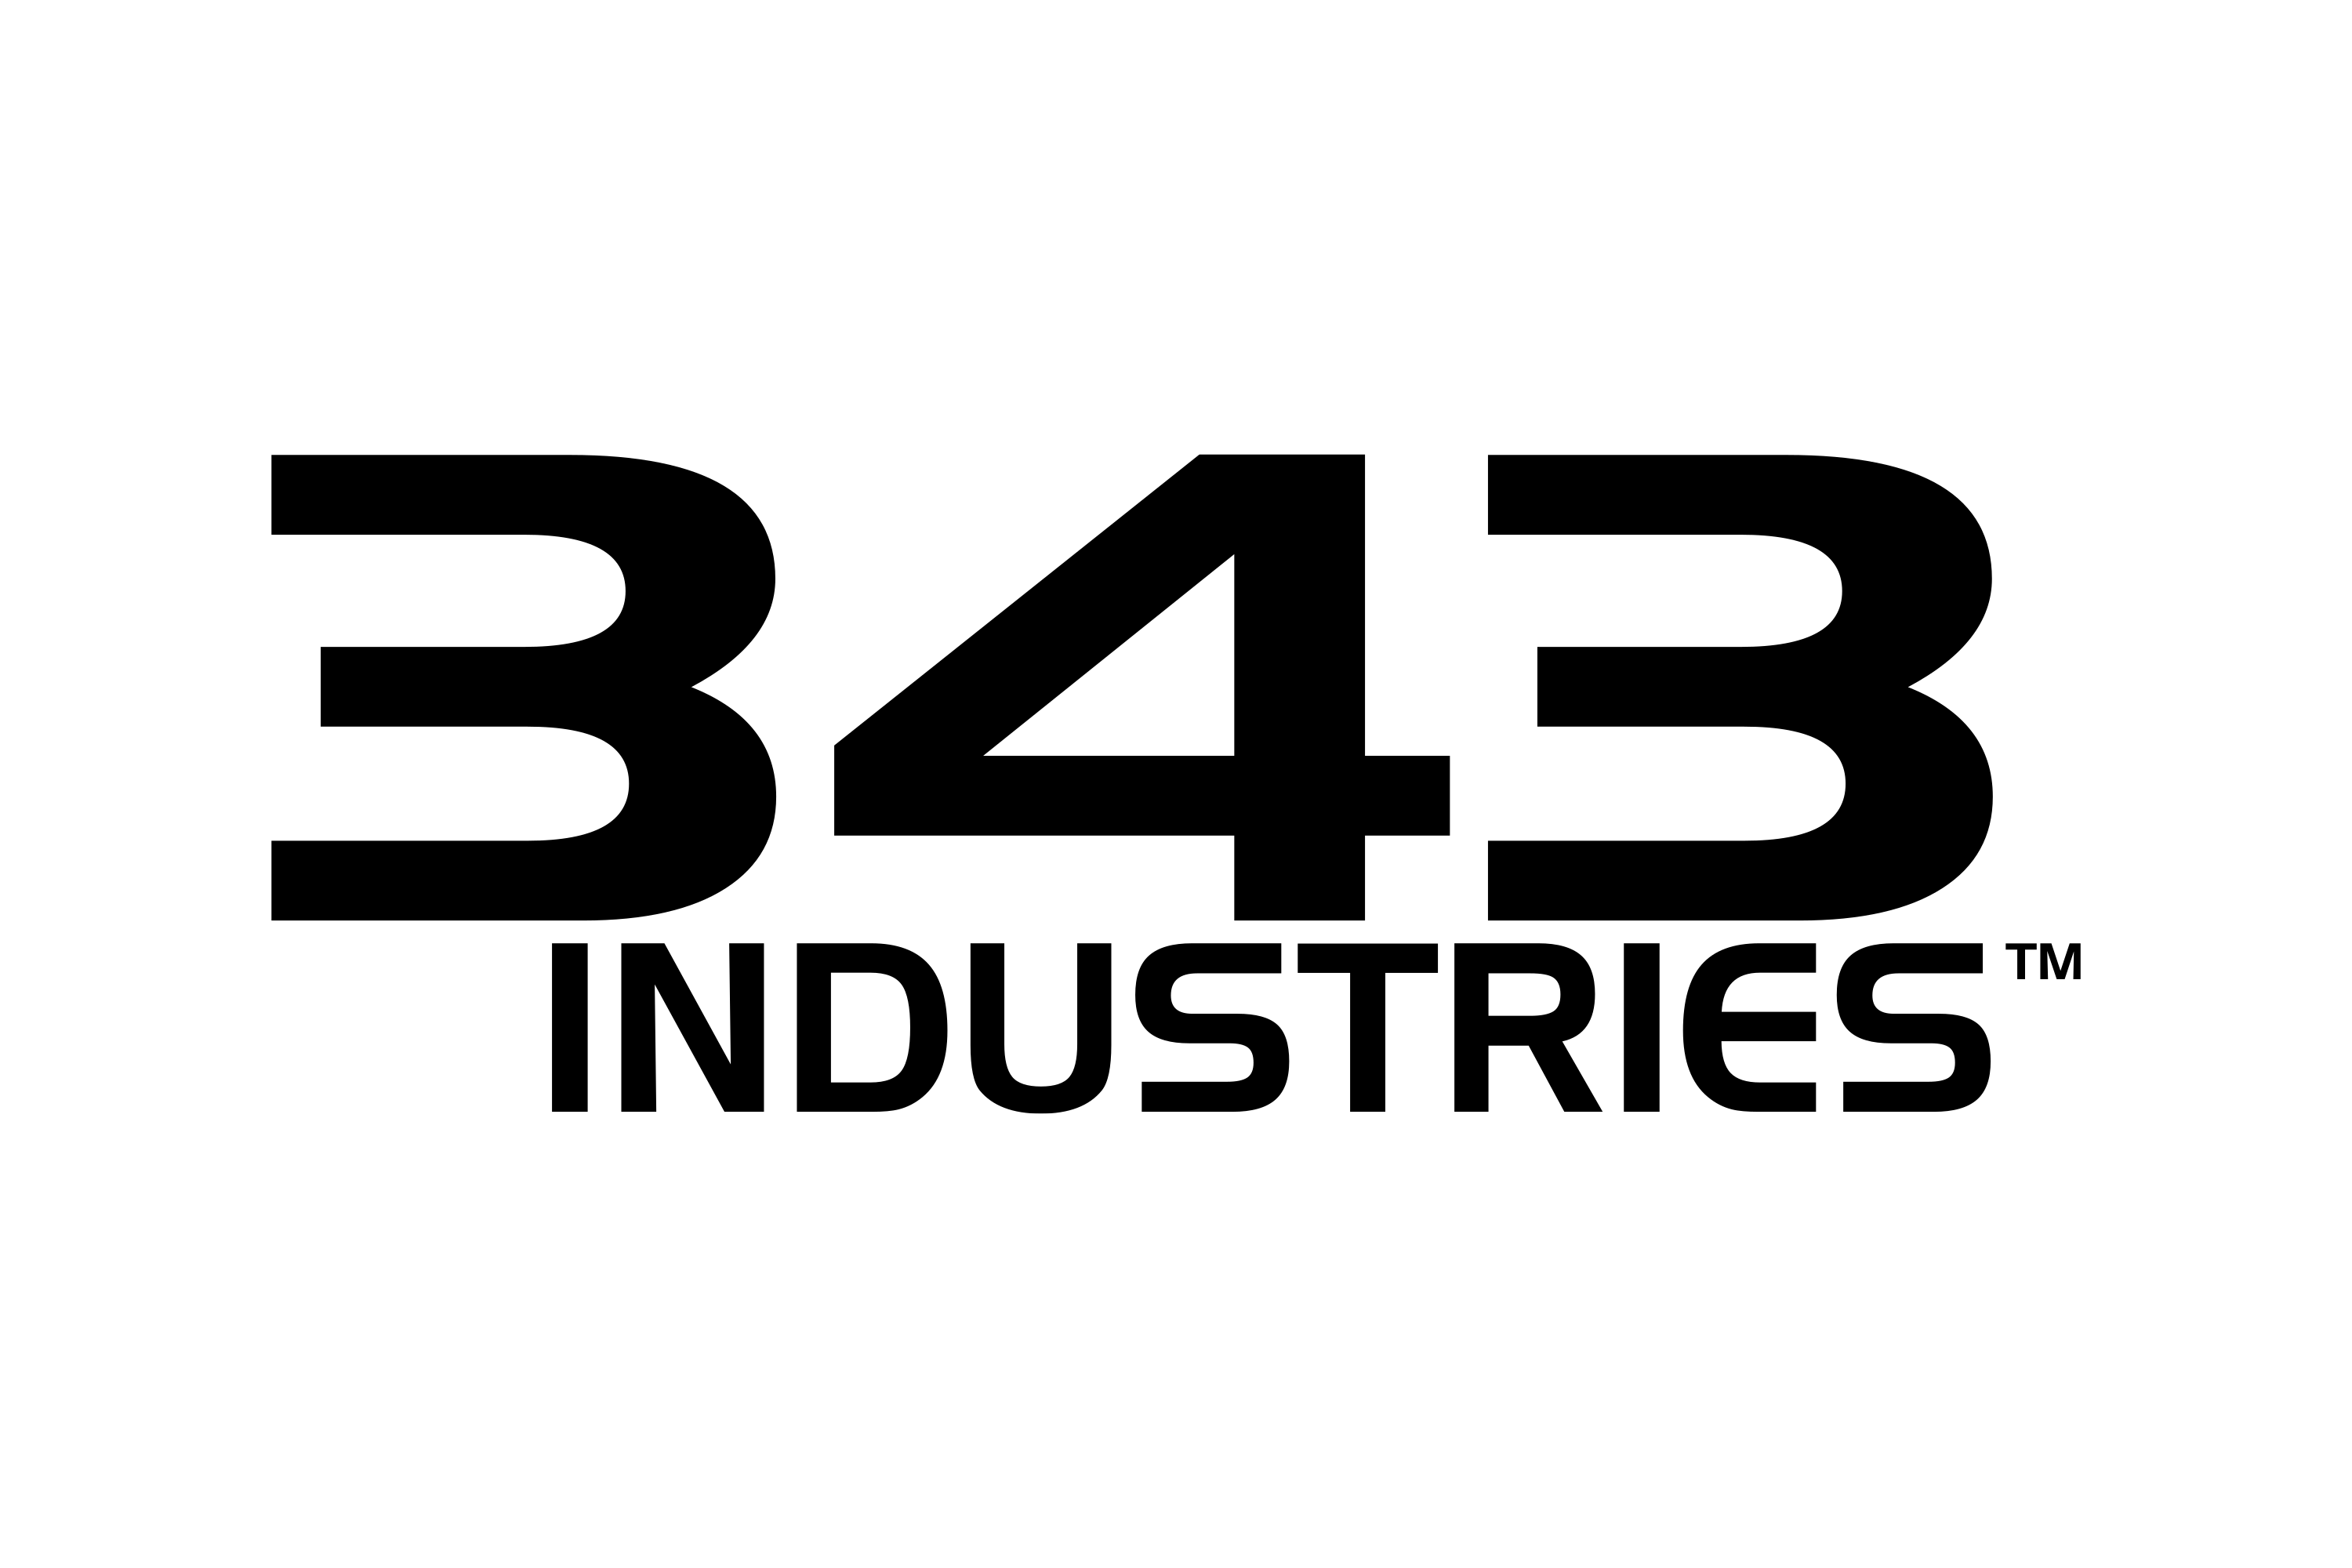 343 Industrias Proxy